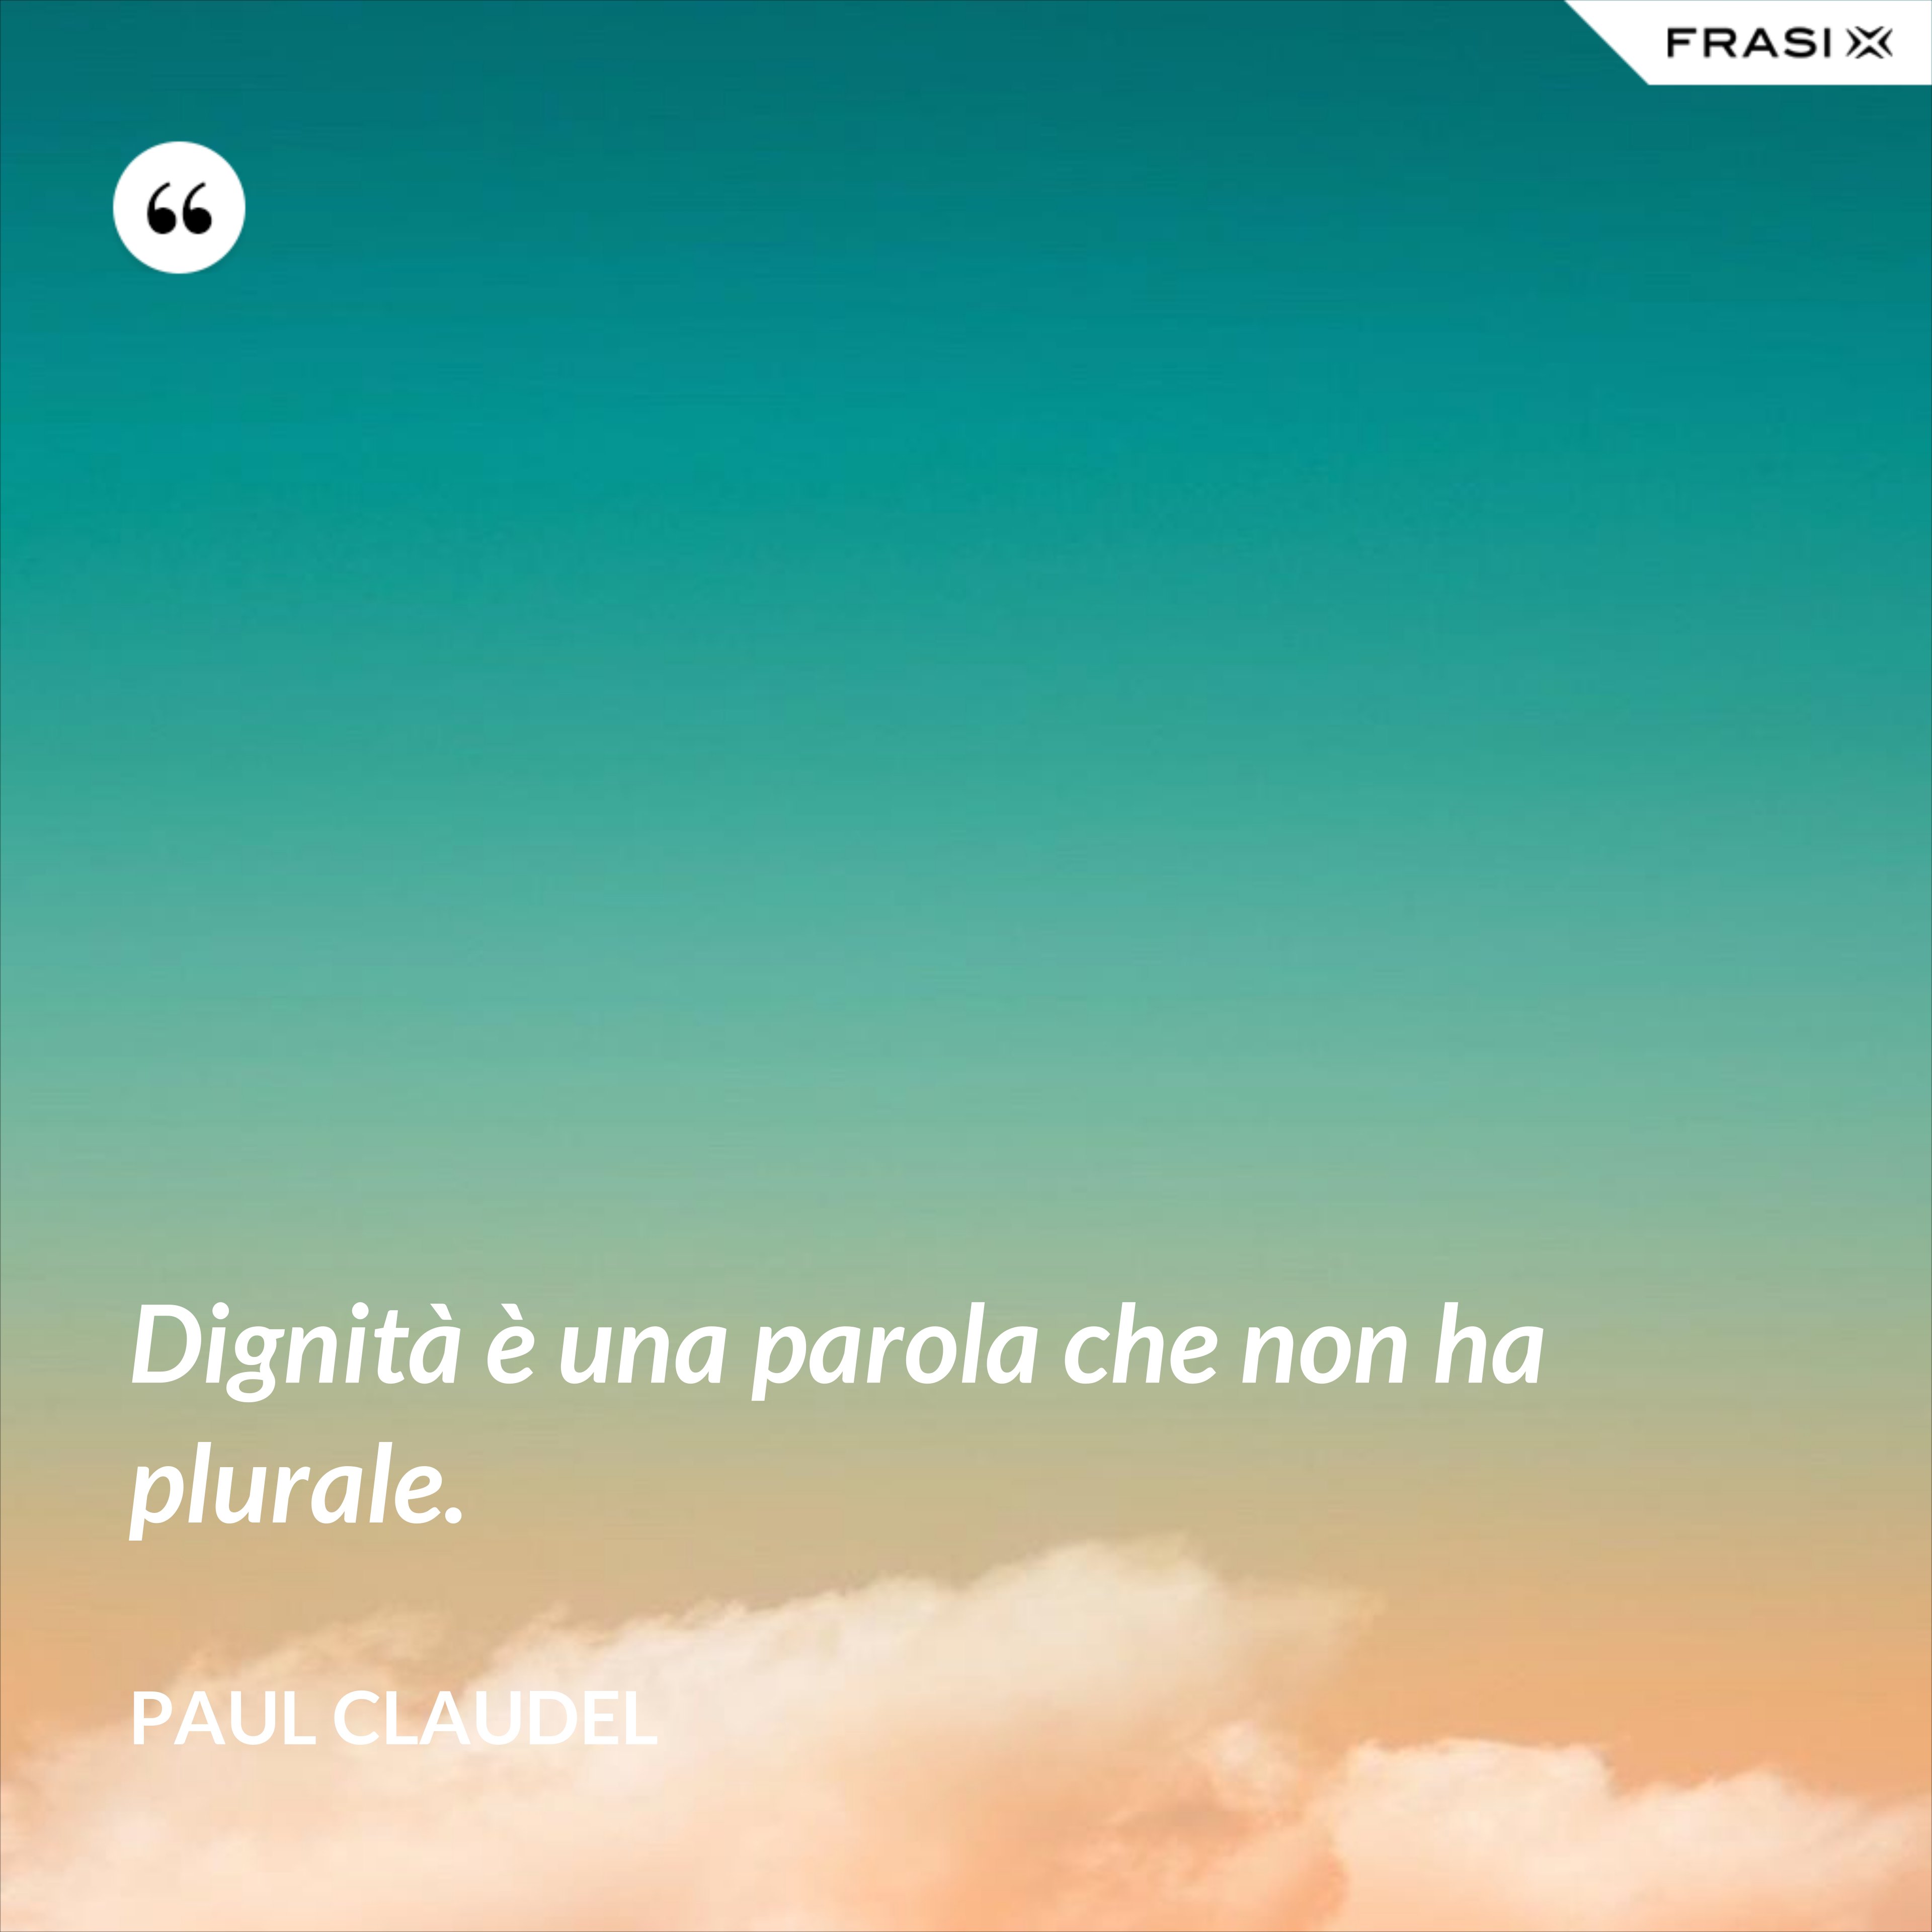 Dignità è una parola che non ha plurale. - Paul Claudel